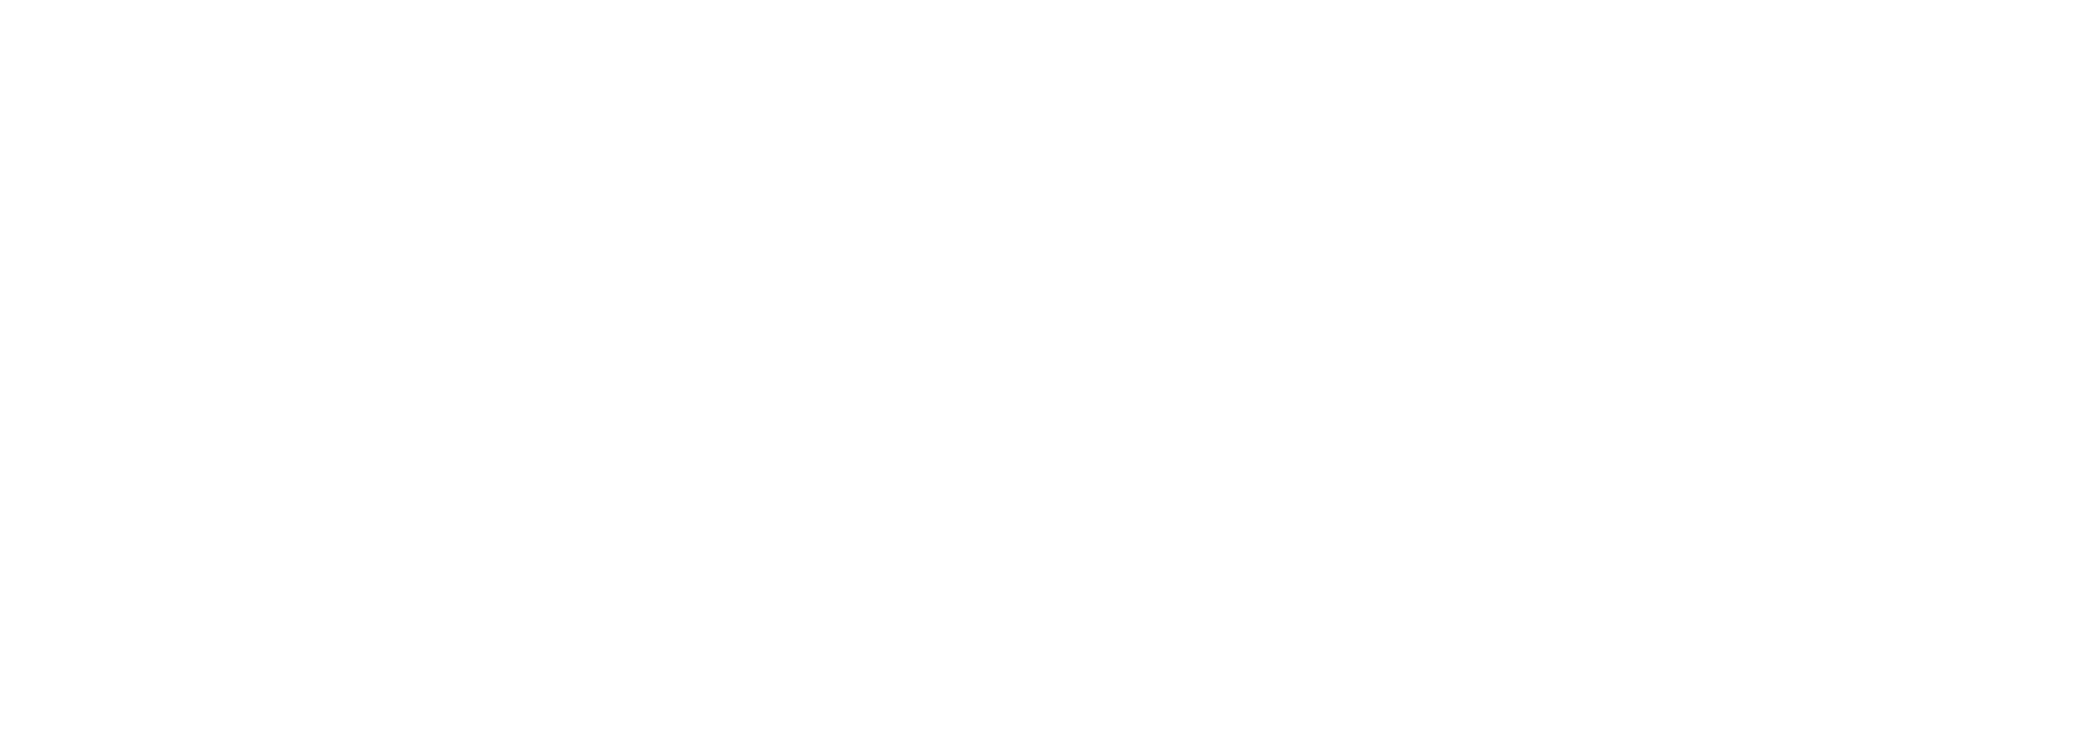 Ashley Nealy